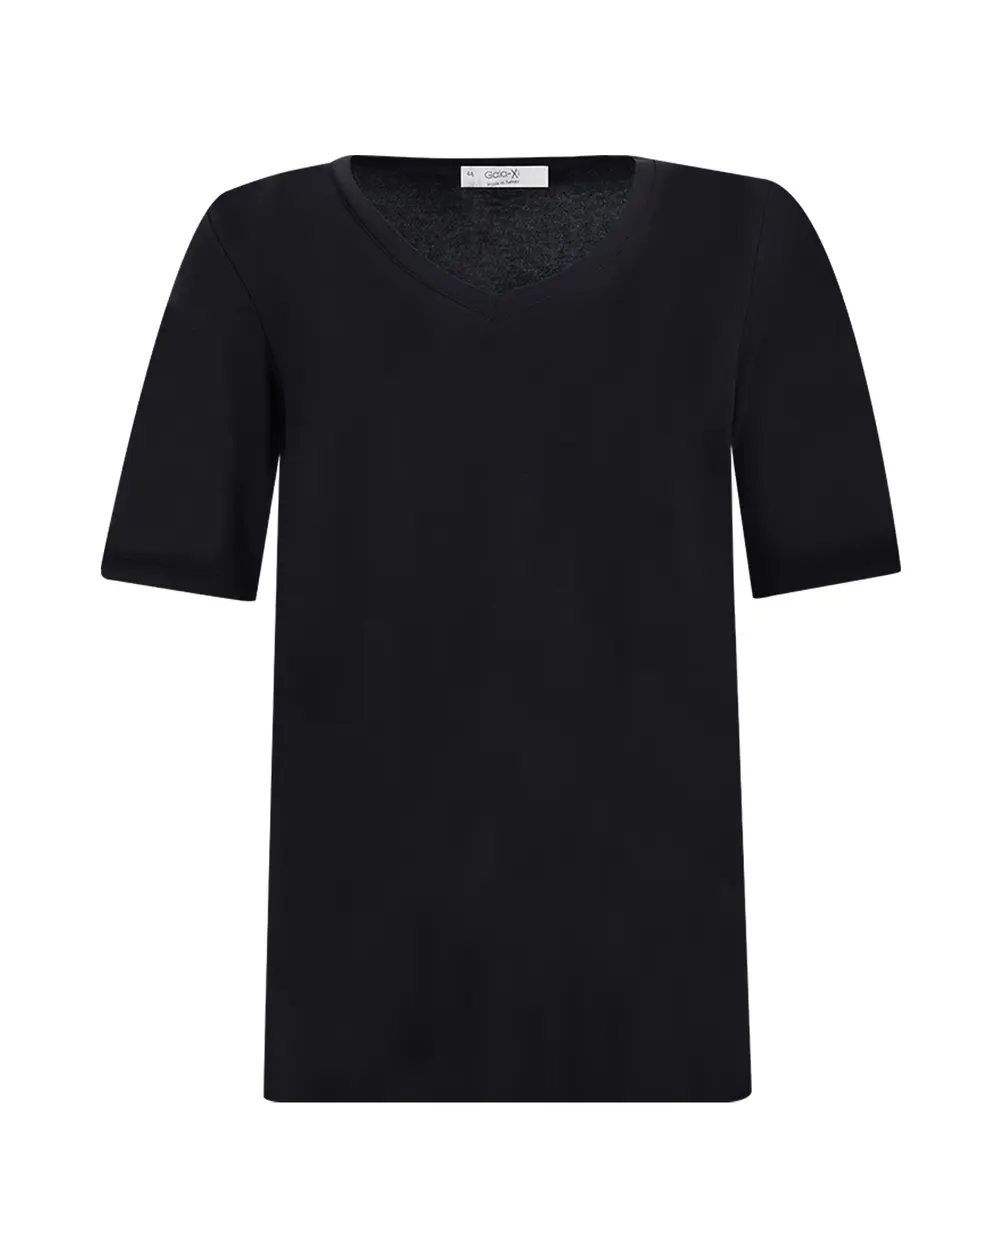 Plus Size Basic V-Neck Short Sleeve T-Shirt